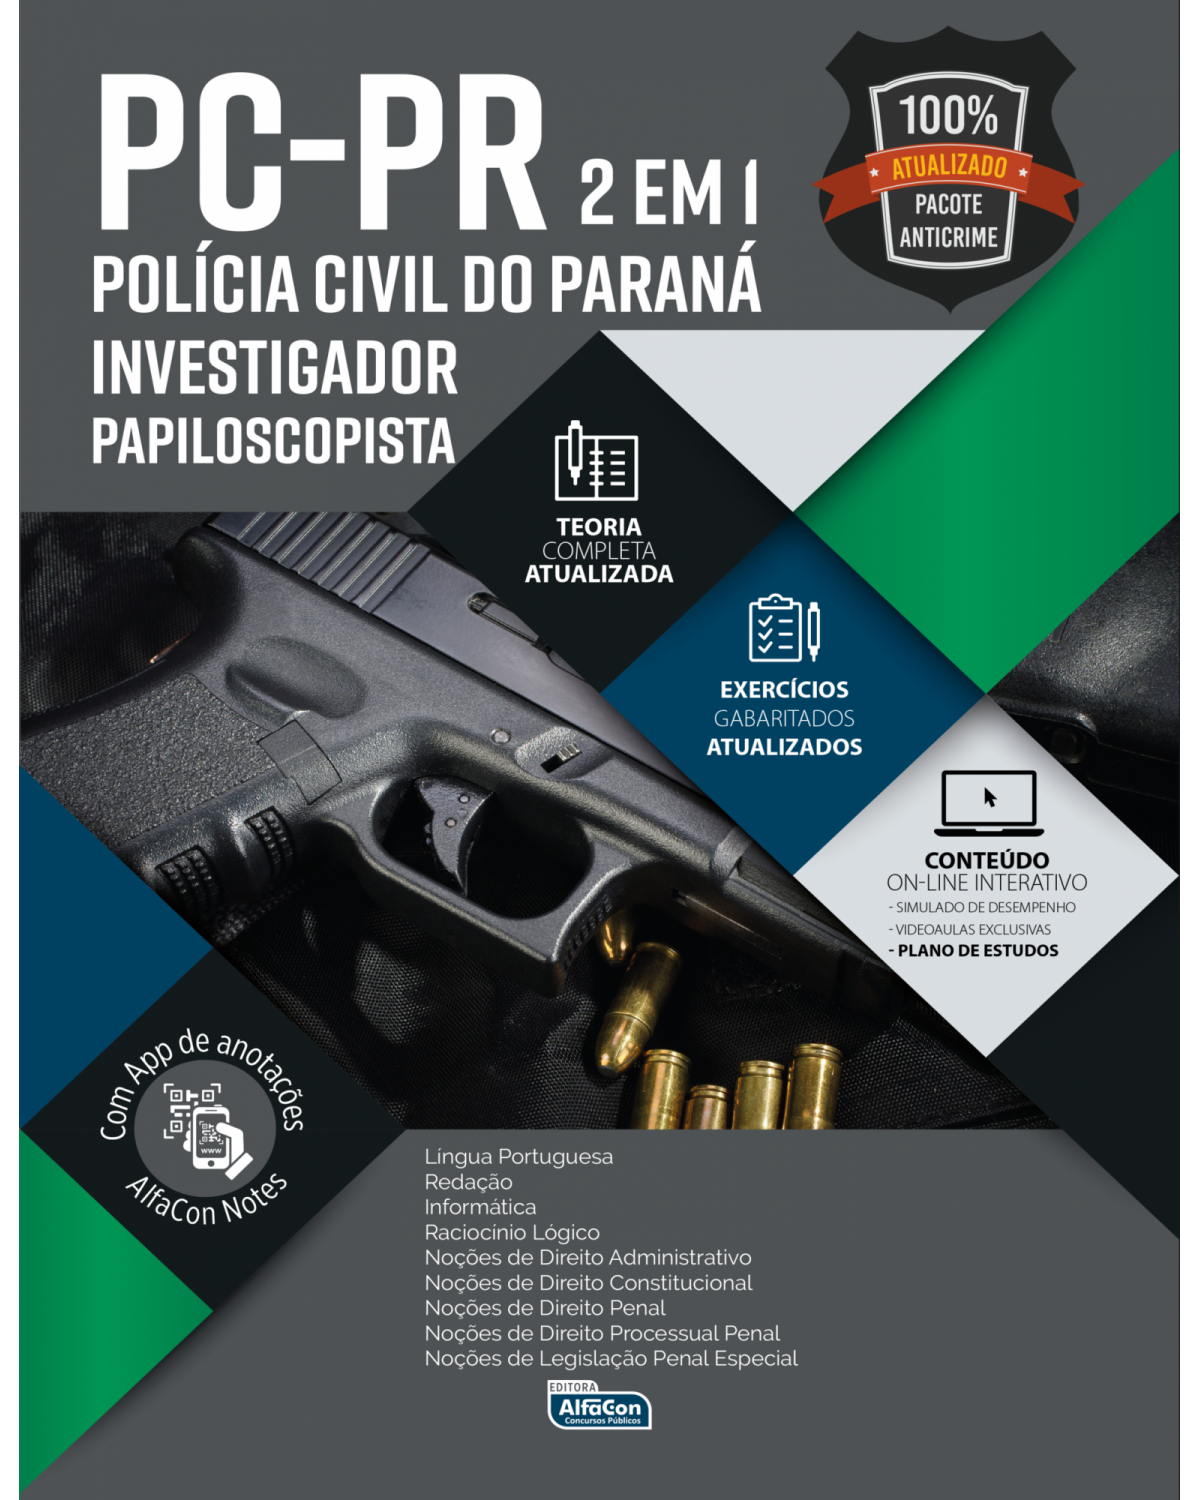 Investigador de polícia e papiloscopista da Polícia Civil do Paraná - Edital 2020 - 1ª Edição | 2020